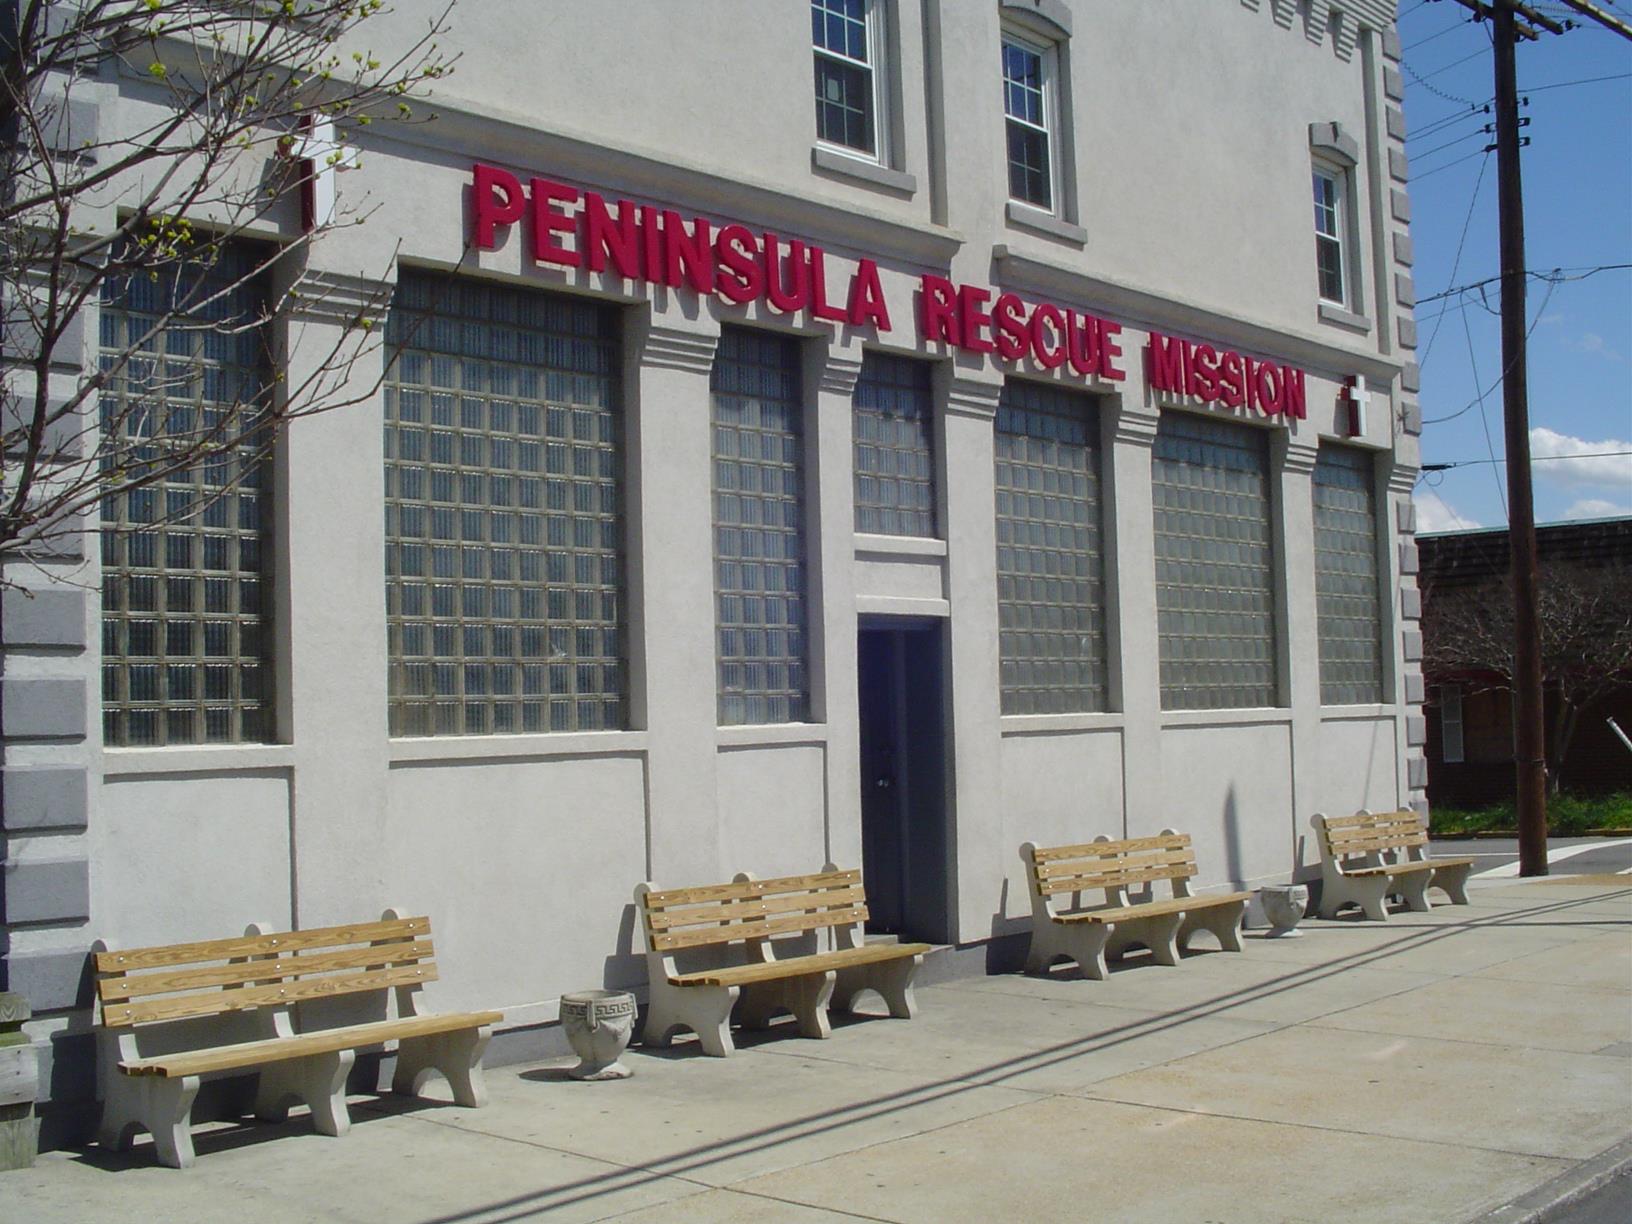 Peninsula Rescue Mission